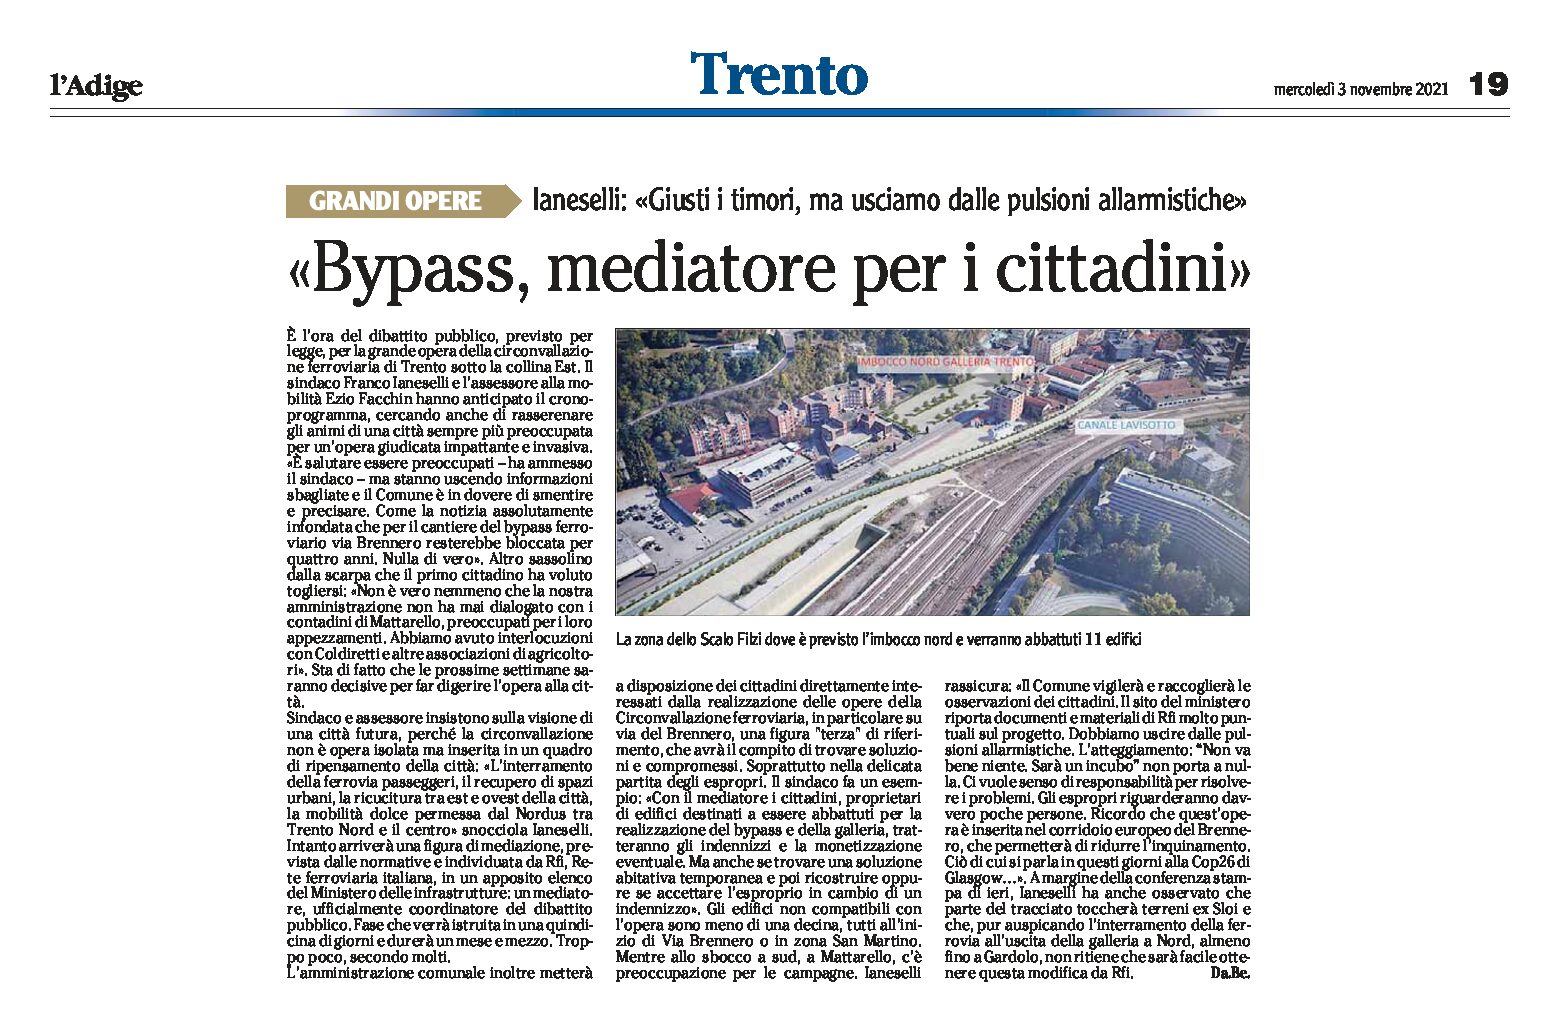 Trento bypass: un mediatore per i cittadini